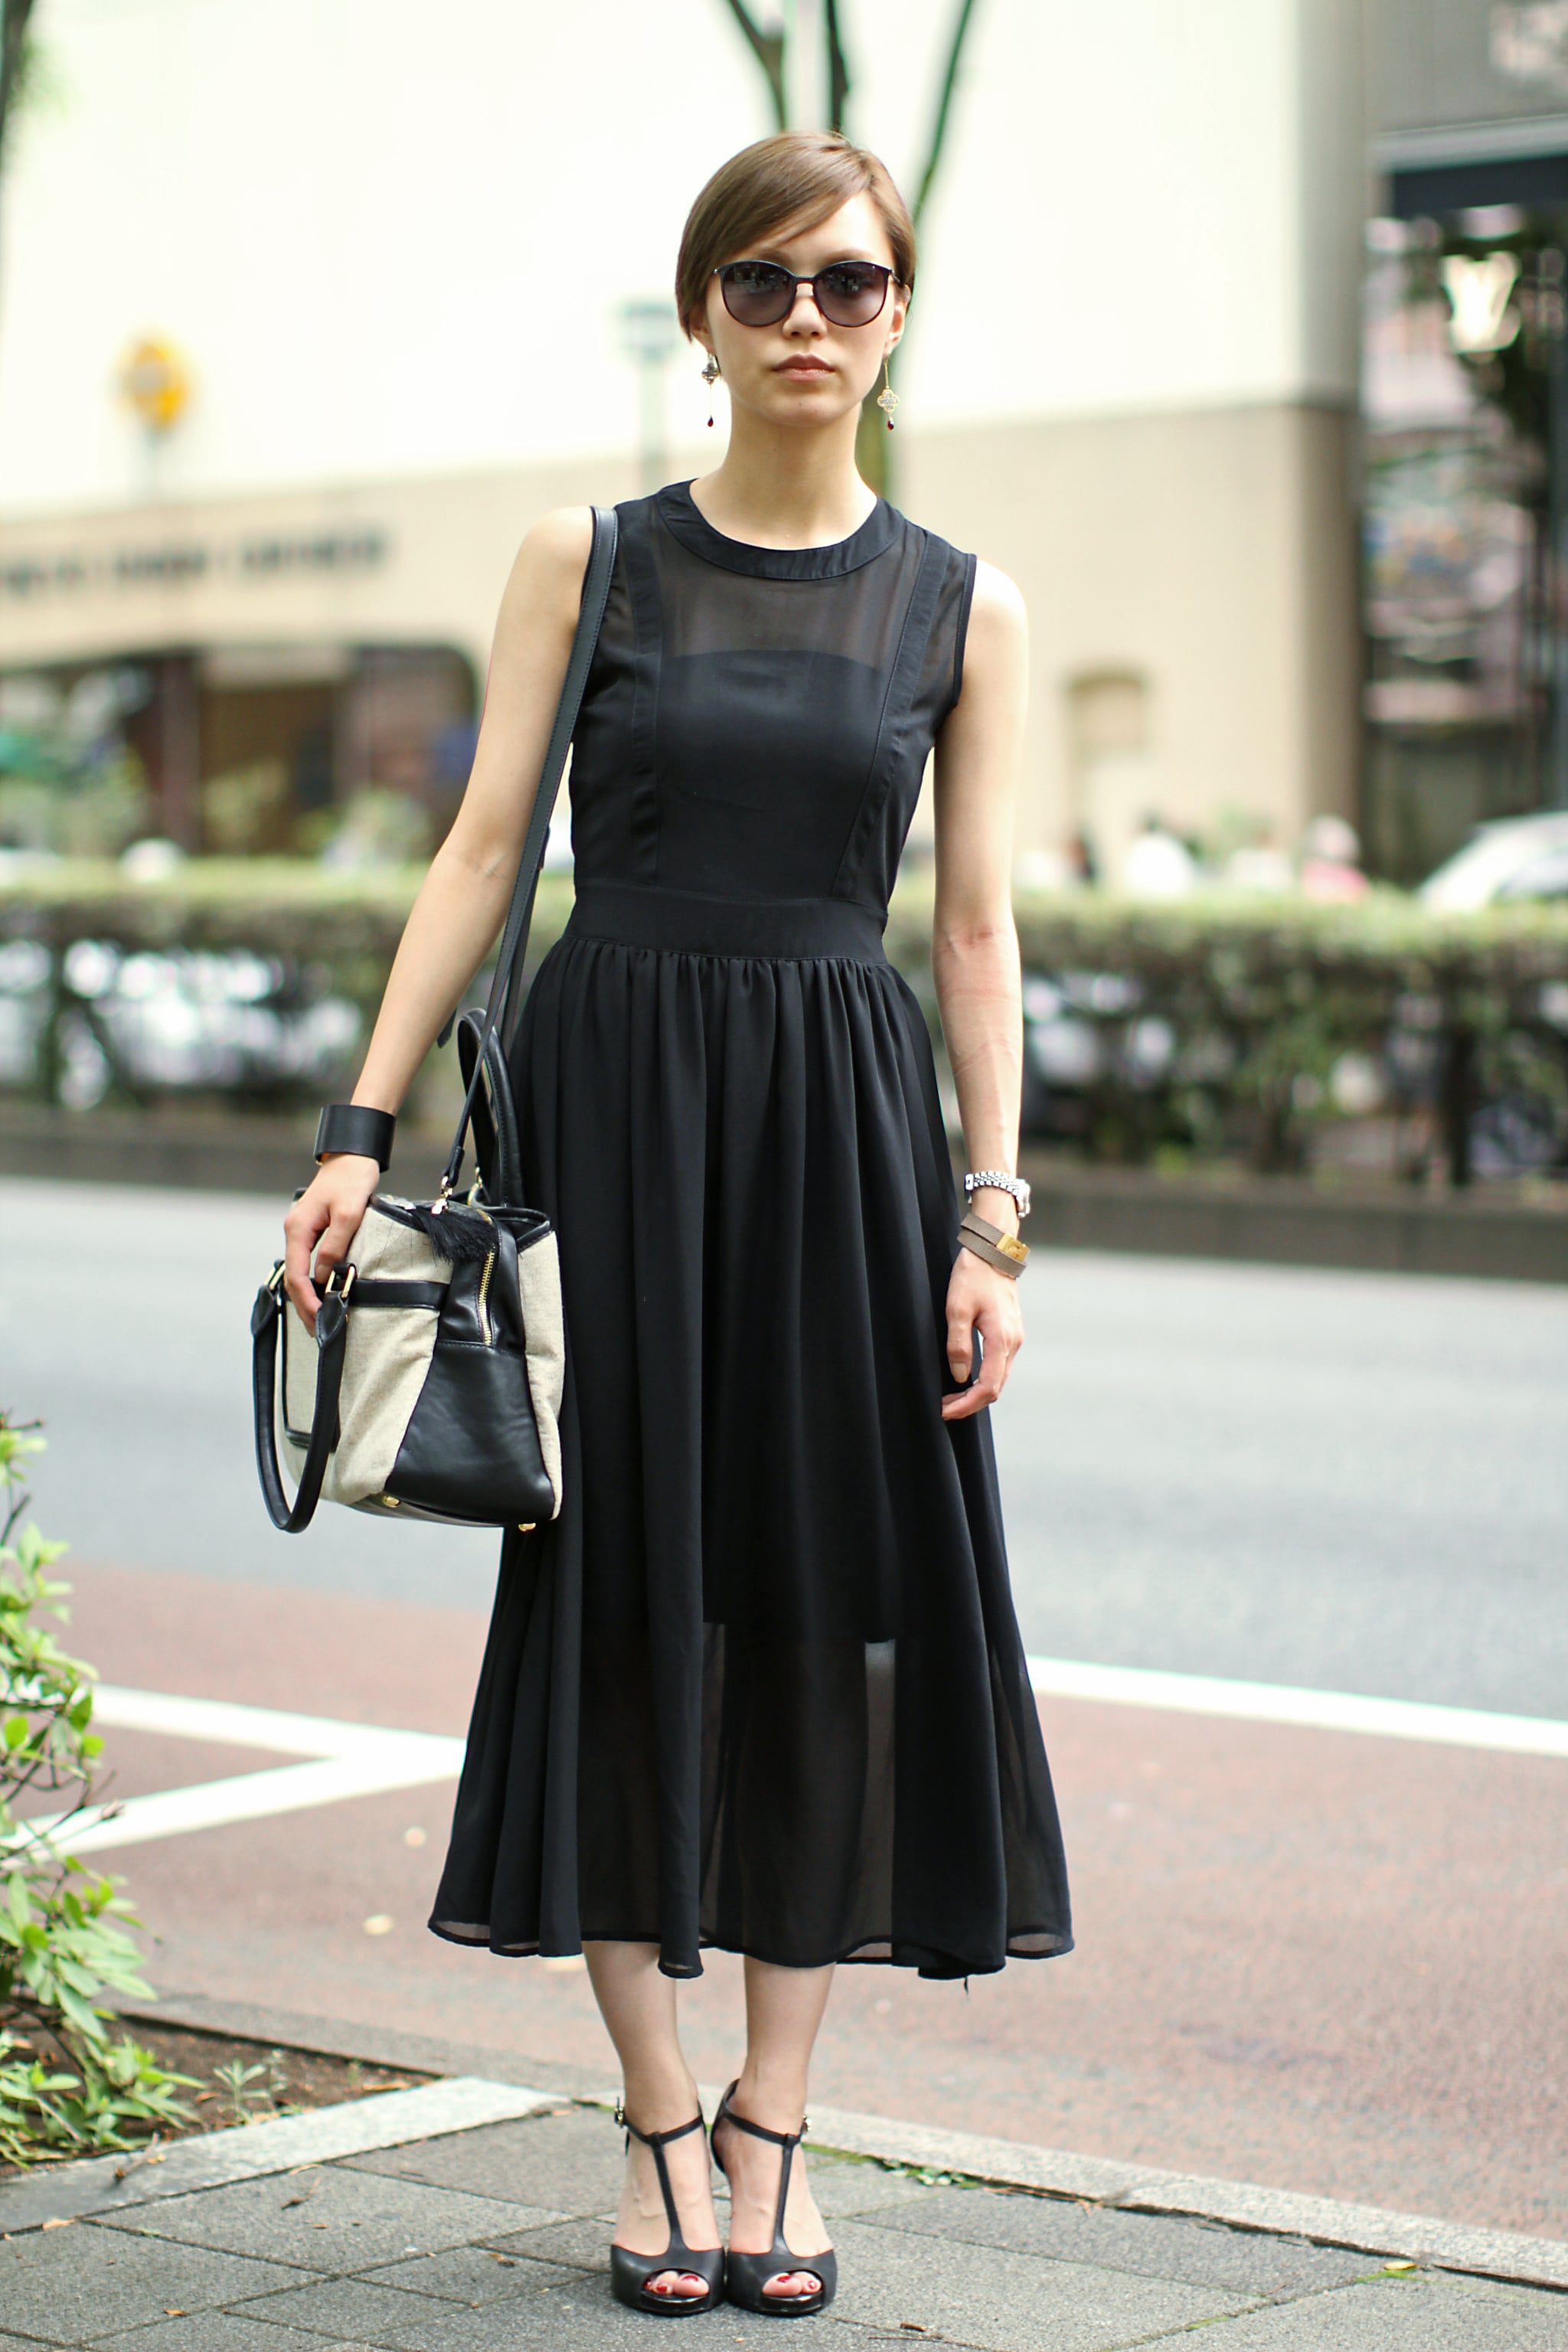 classic black midi dress